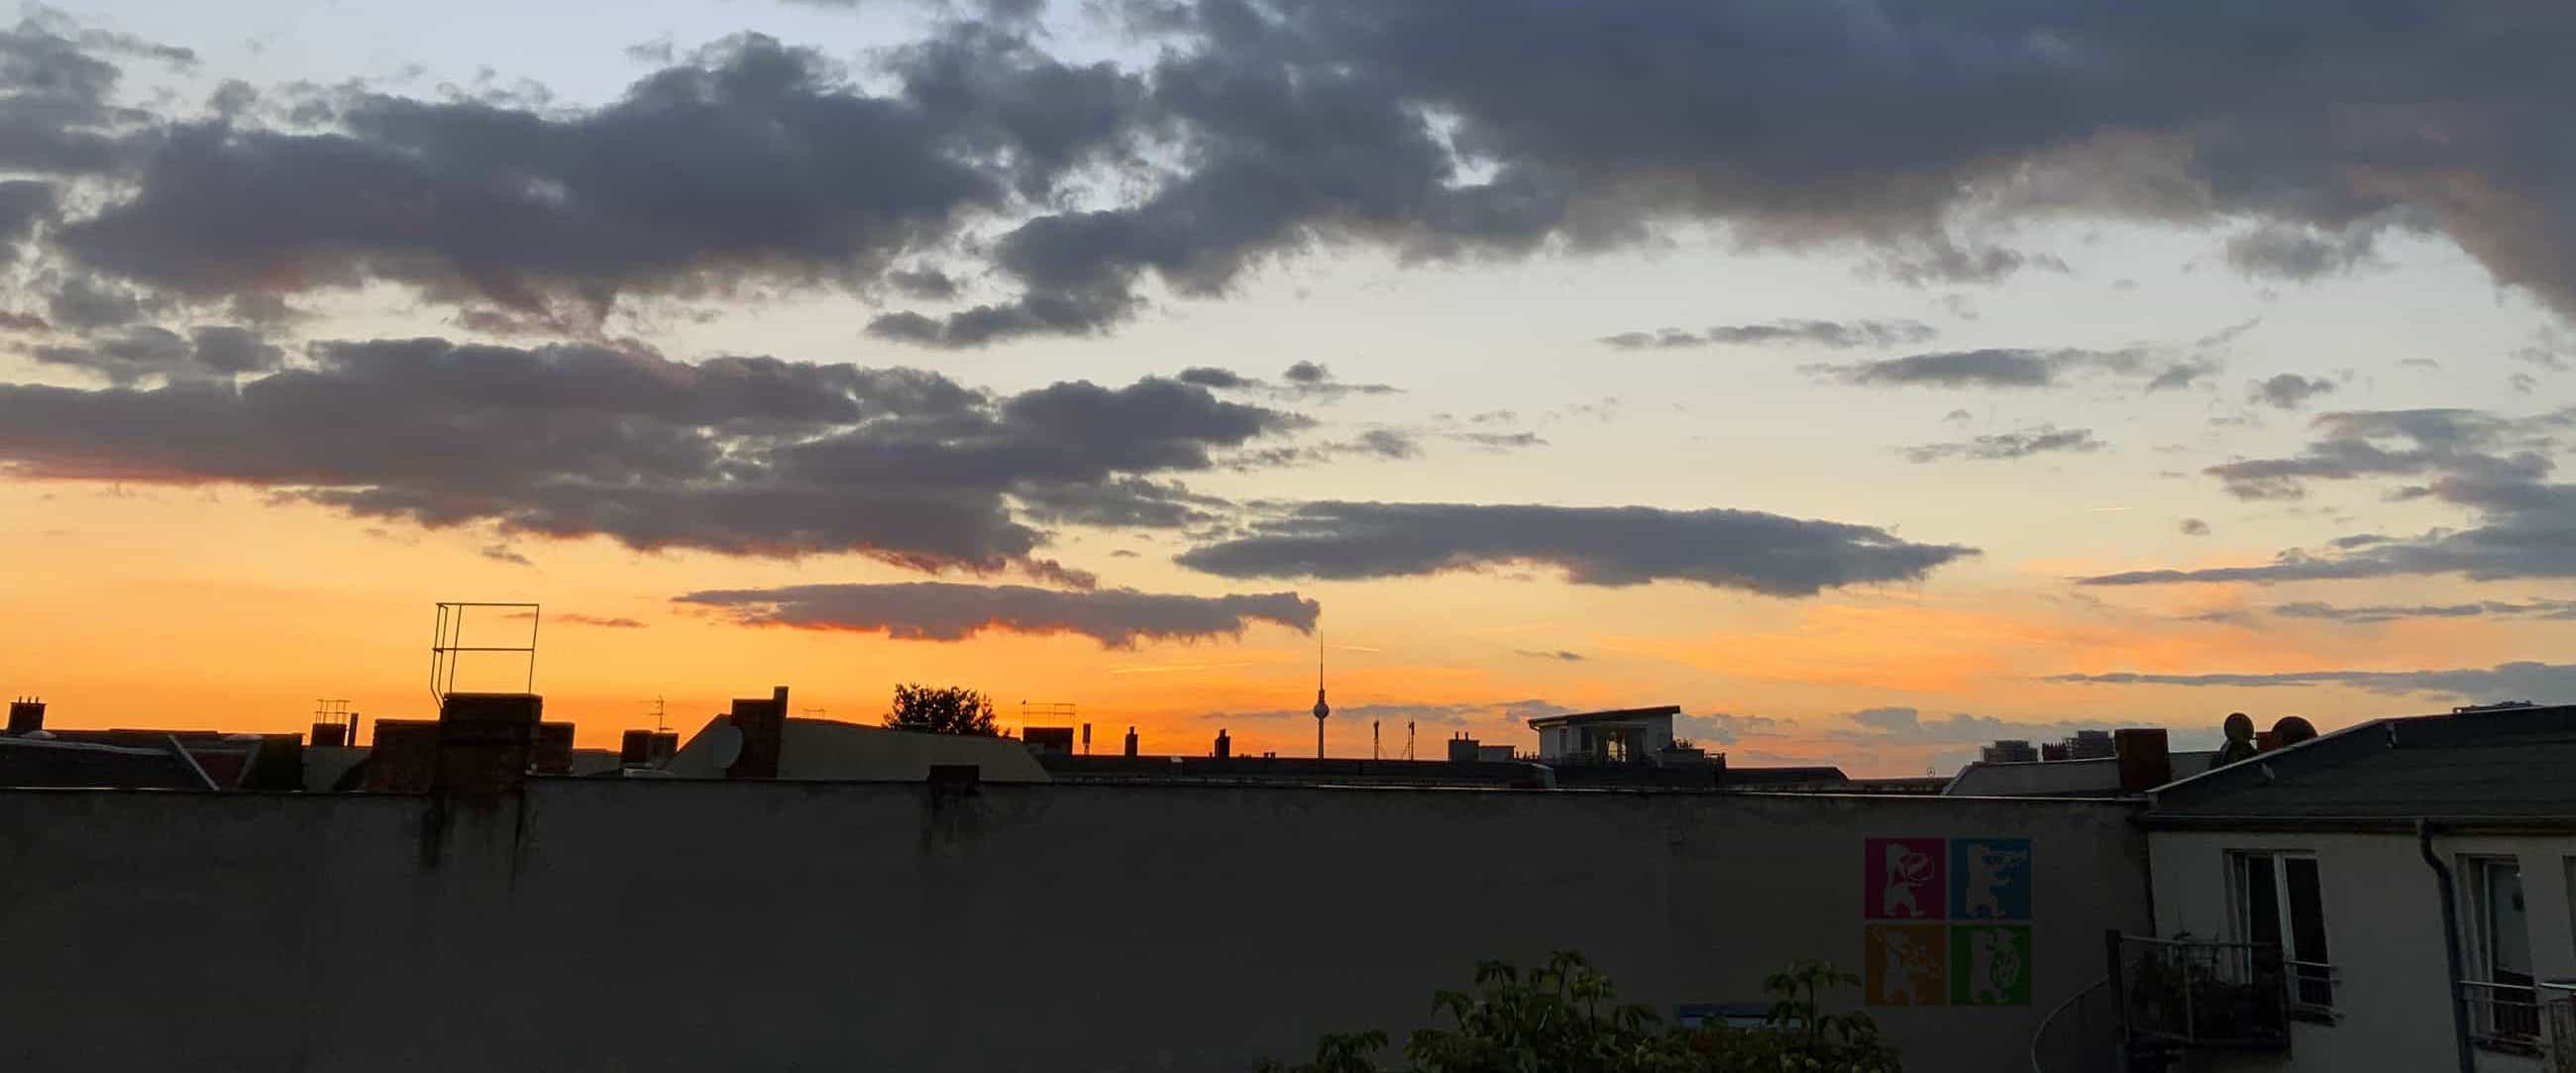 Panorama von Berlin bei Abenddämmerung. Im Vordergrund ist eine Hauswand mit dem Logo des Bläsertreffens